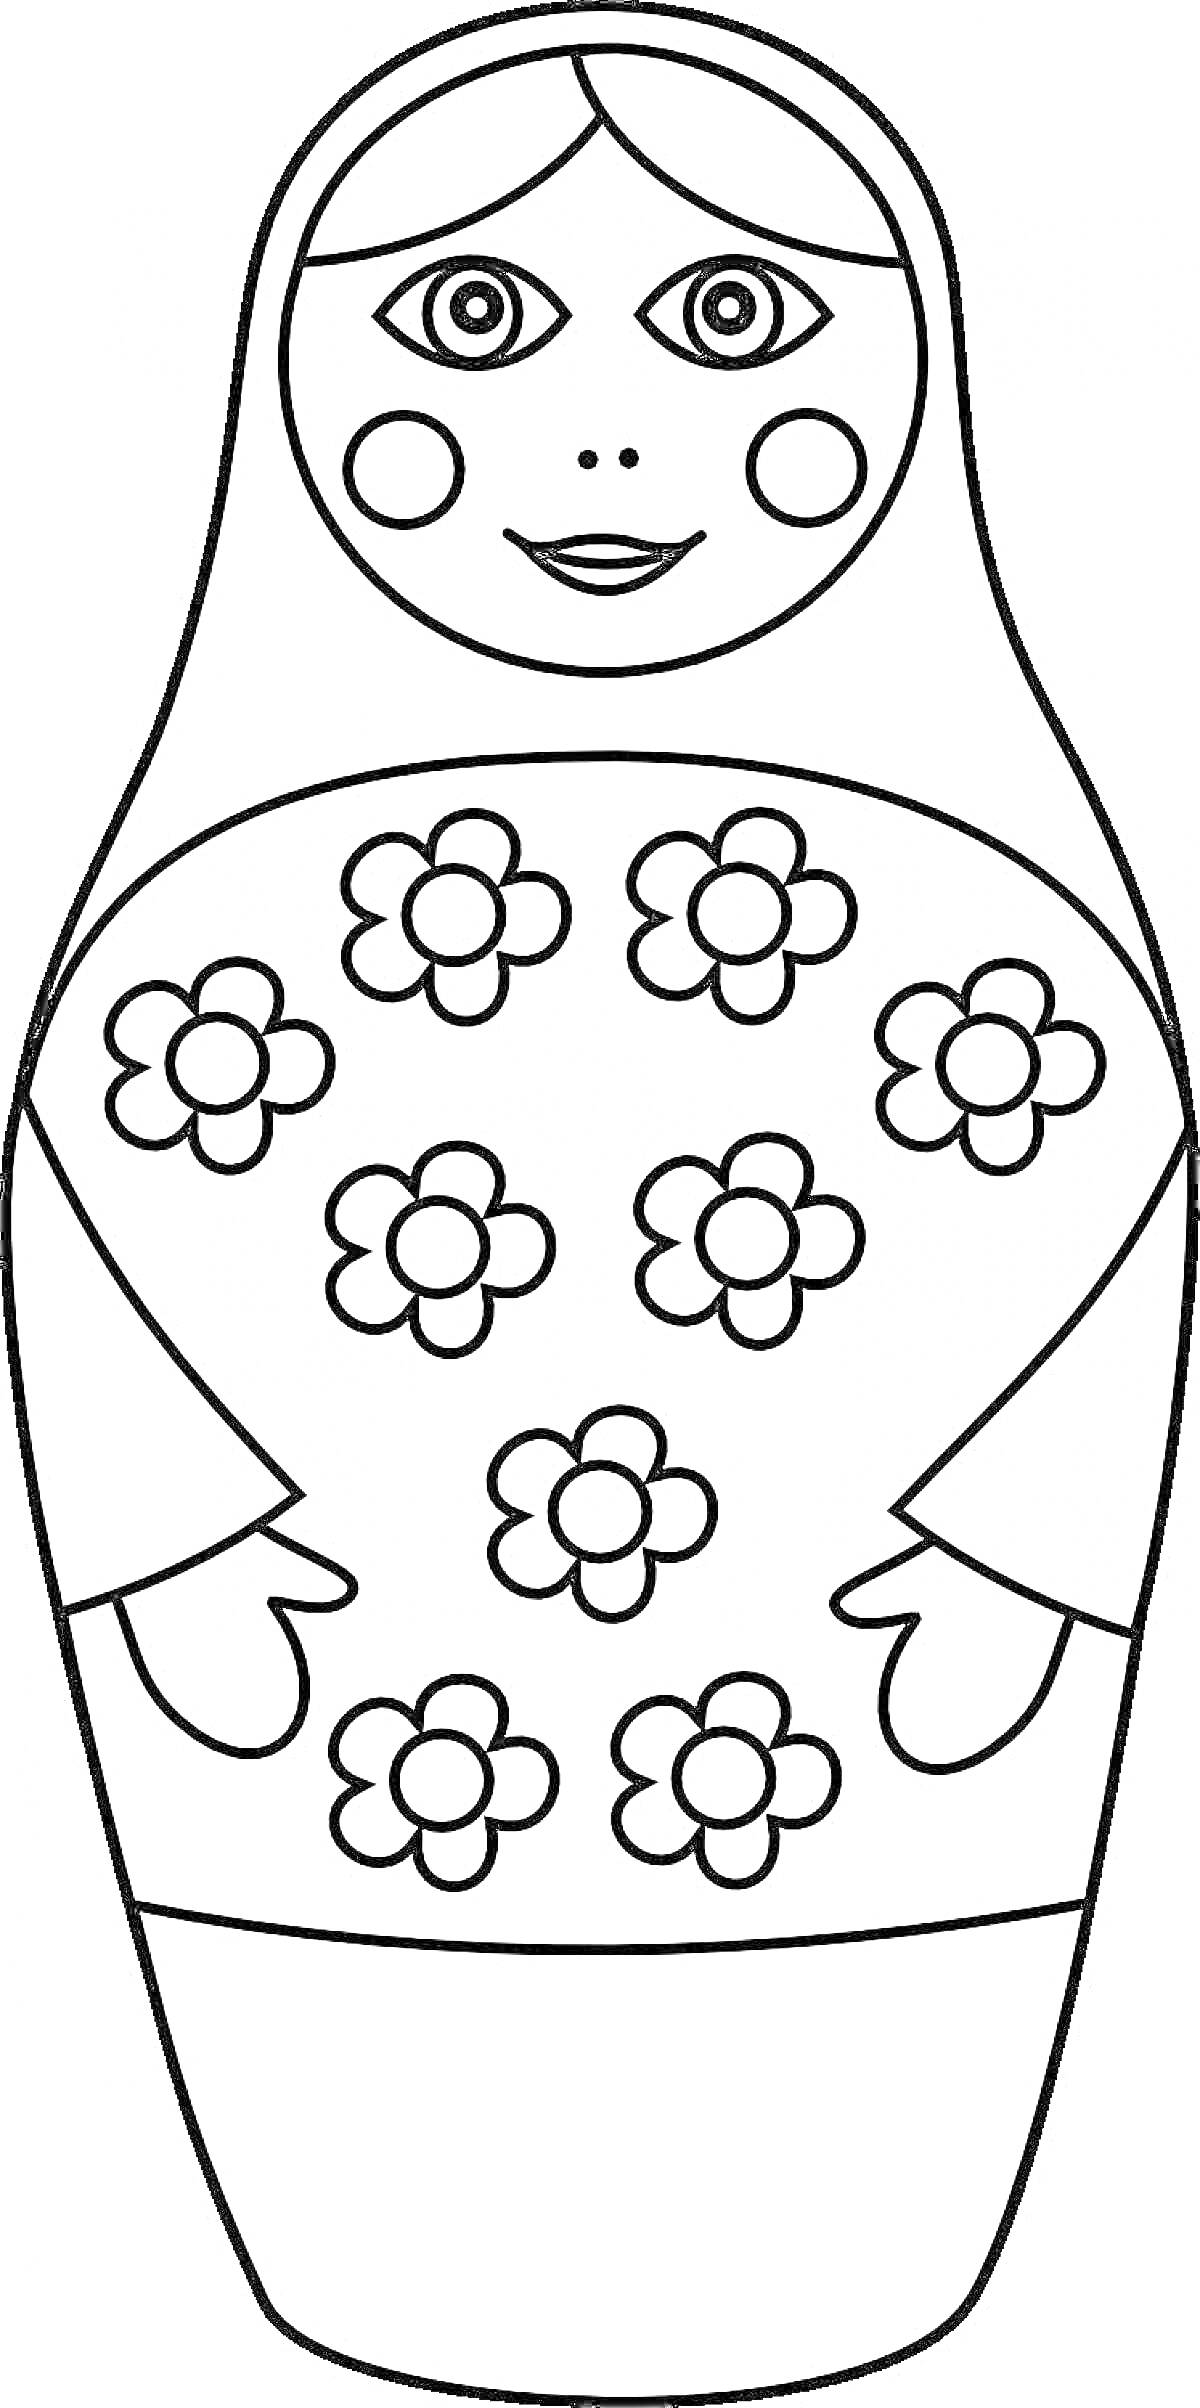 Раскраска Матрешка с цветочным узором, шаблон для раскрашивания